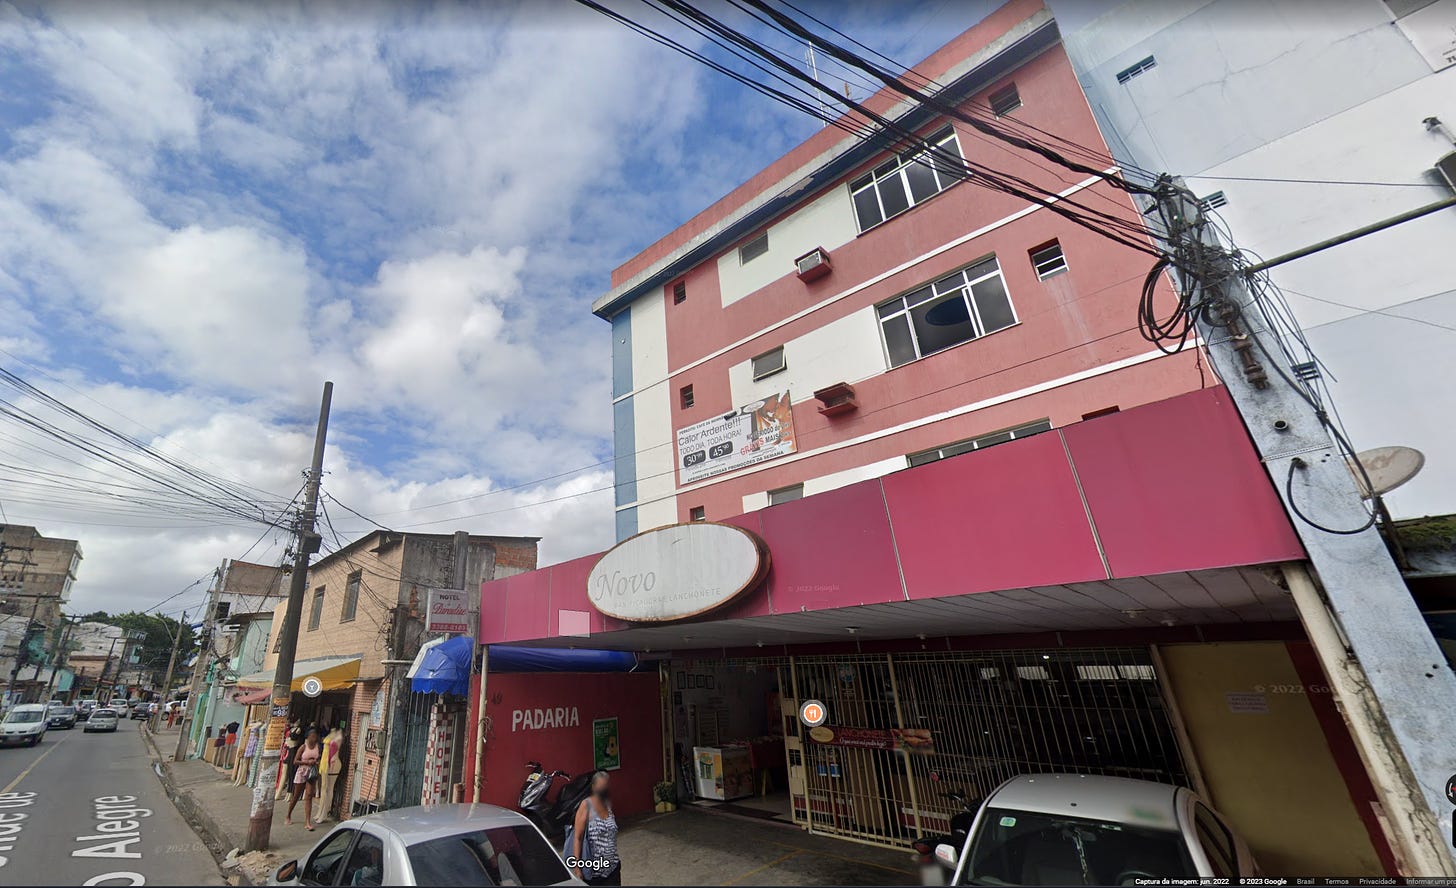 Um prédio de cor salmão e branco, acima de uma pandaria, a visão é de uma rua levemente movimentada retirada do Google Maps